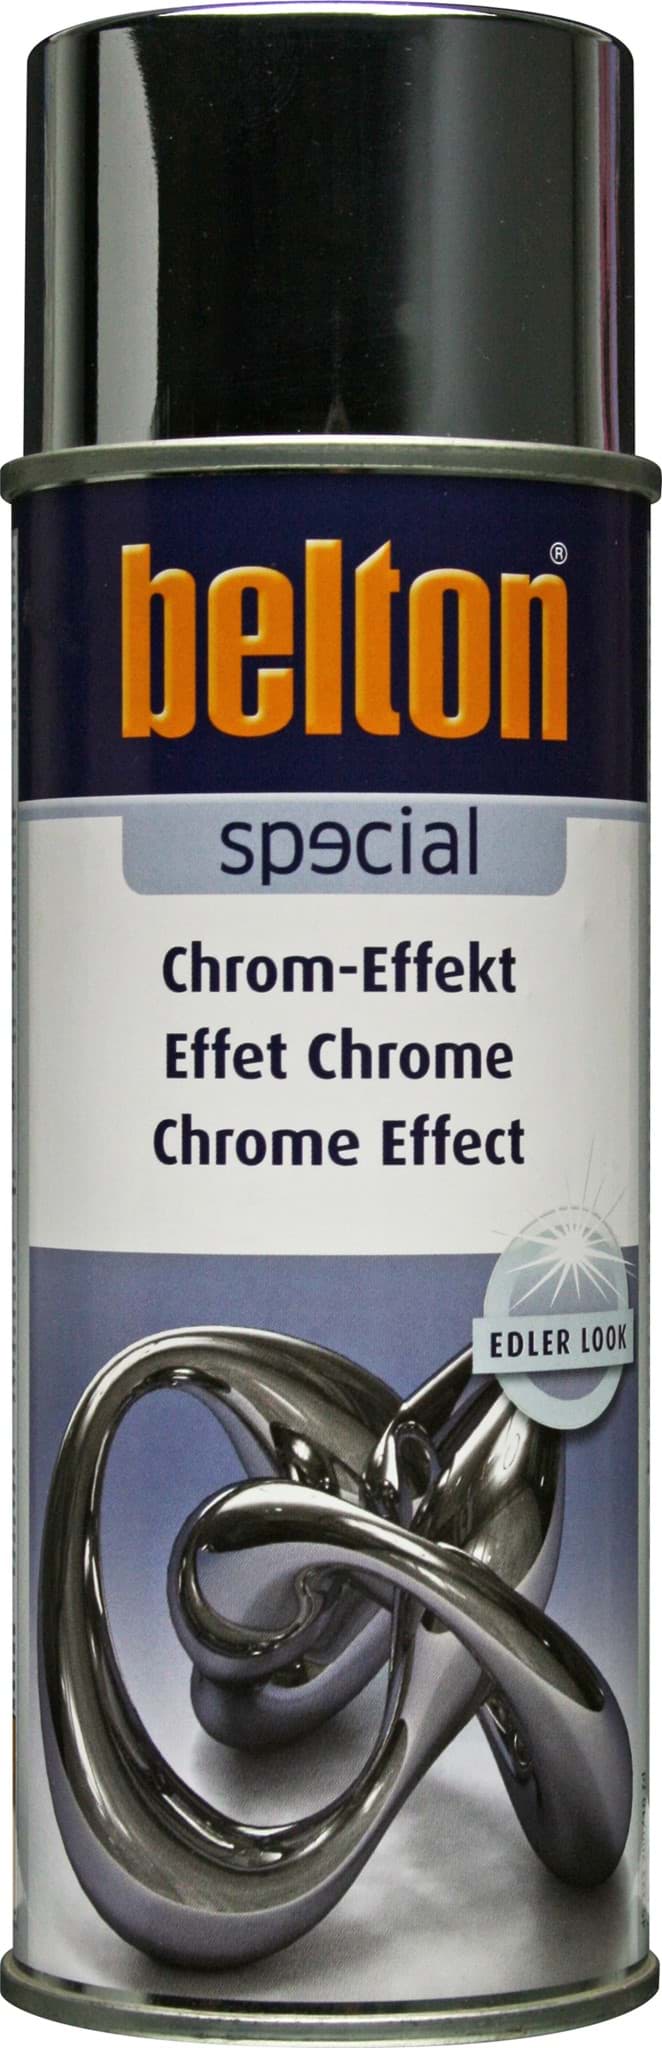 Picture of Belton Chrom Spray 400ml Spraydose K323200